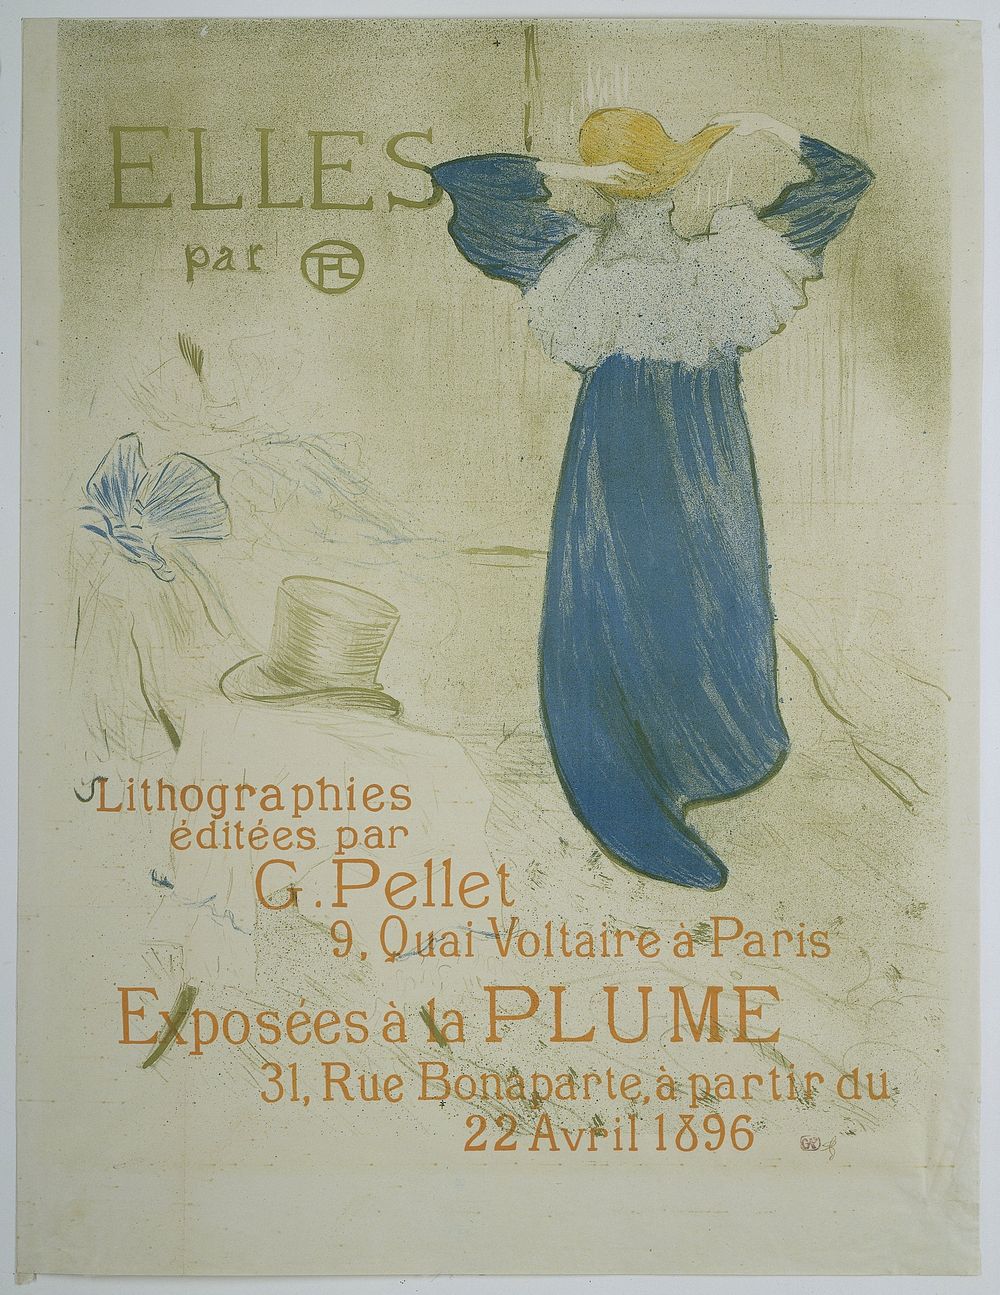 Affiche voor de expositie van de serie Elles van Toulouse-Lautrec bij la Plume (1896) by Henri de Toulouse Lautrec and…